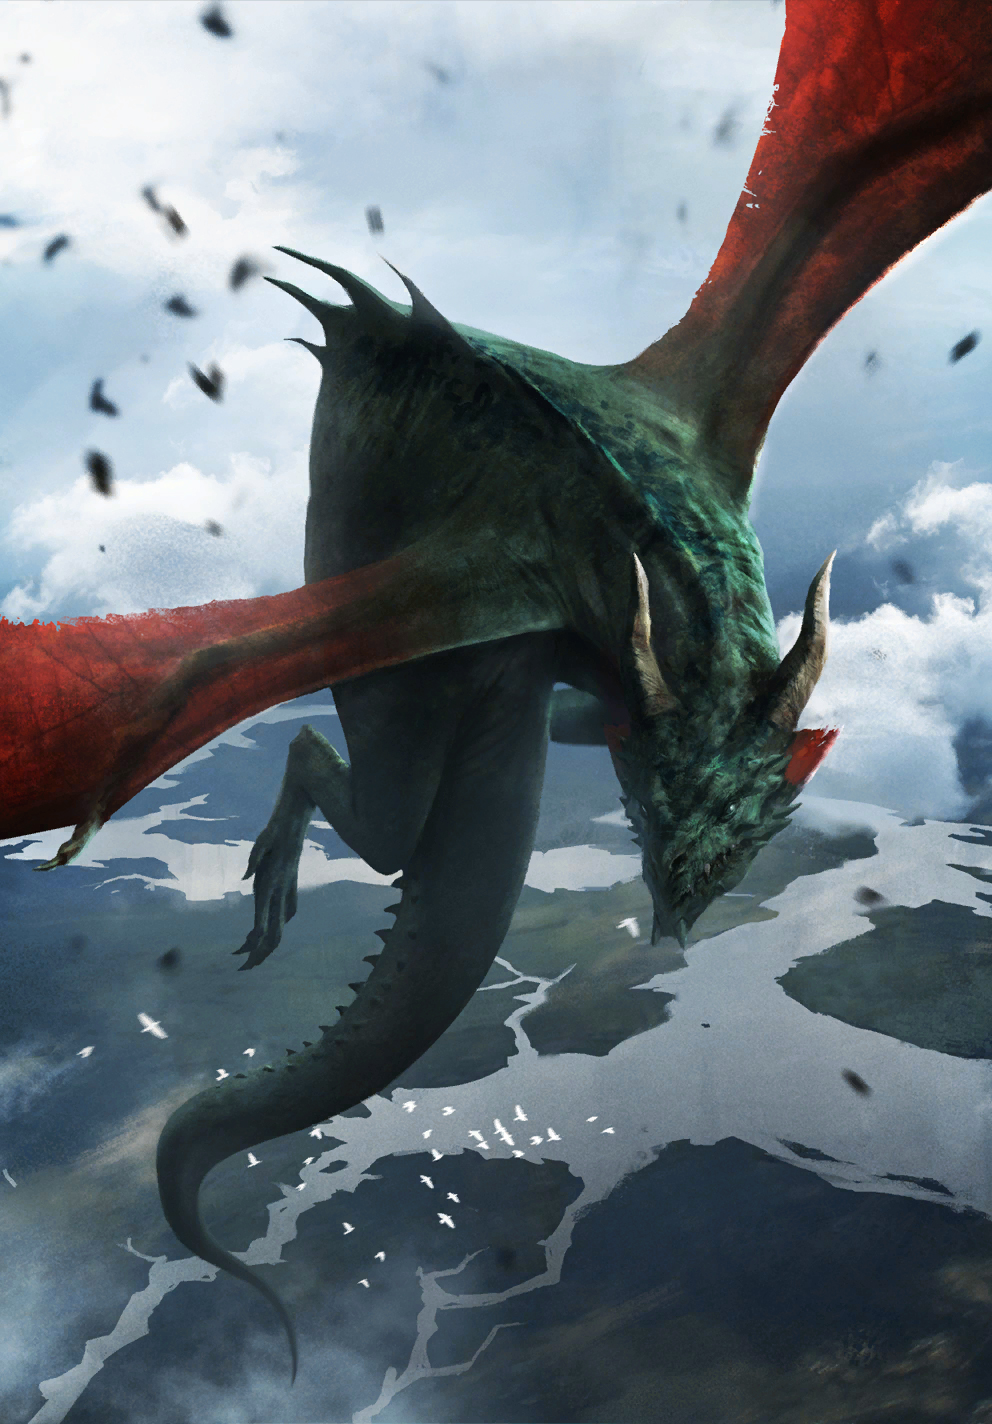 White dragon, Dungeons & Dragons Lore Wiki